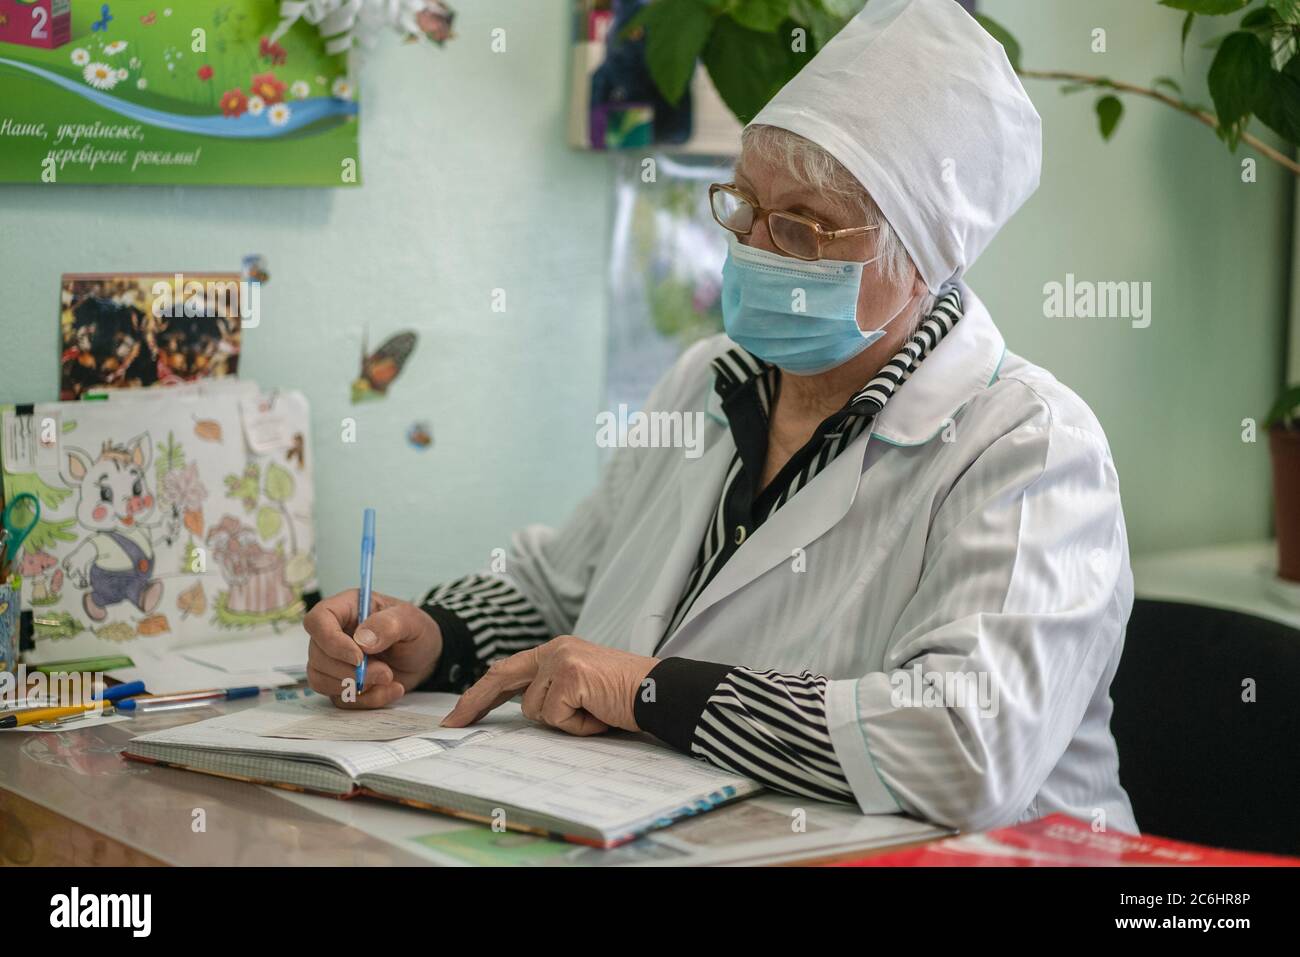 Ältere Krankenschwester verschreibt ärztliche Verschreibung für den Patienten. Maskierte ältere Frau schreibt in der Patientenkarte. Stadtkrankenhaus. Mai 2020, Brovary, Ukraine Stockfoto